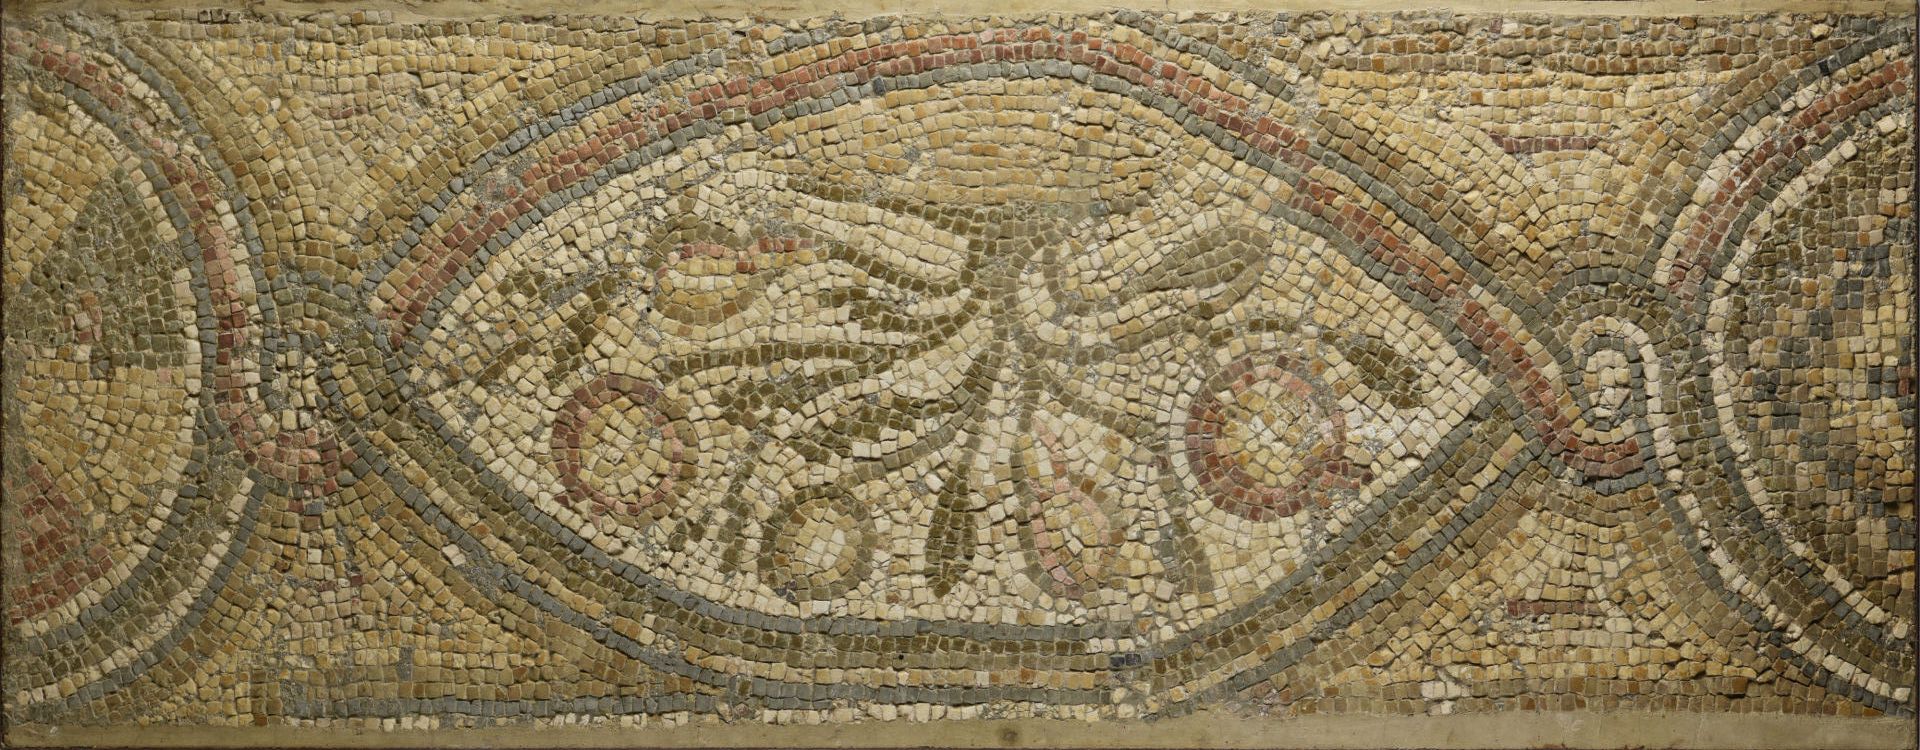 Null 重要的马赛克碎片，装饰着由三层网下的曼陀罗中保留的花朵楣。
罗马时期
57 x 145厘米
(安装在金属框架内)